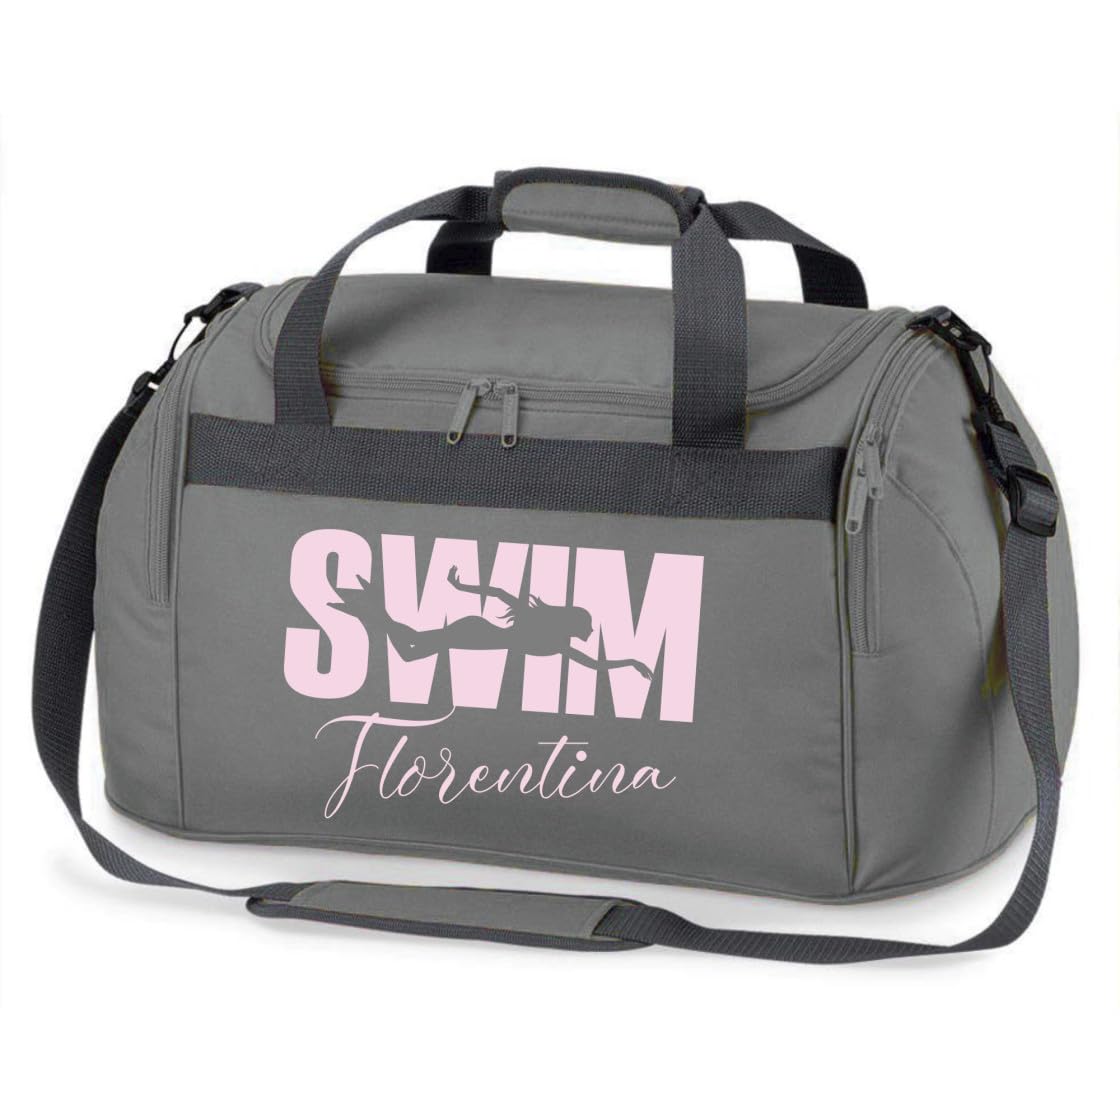 minimutz Sporttasche Schwimmen für Kinder - Personalisierbar mit Name - Schwimmtasche Swim Duffle Bag für Mädchen und Jungen (grau)